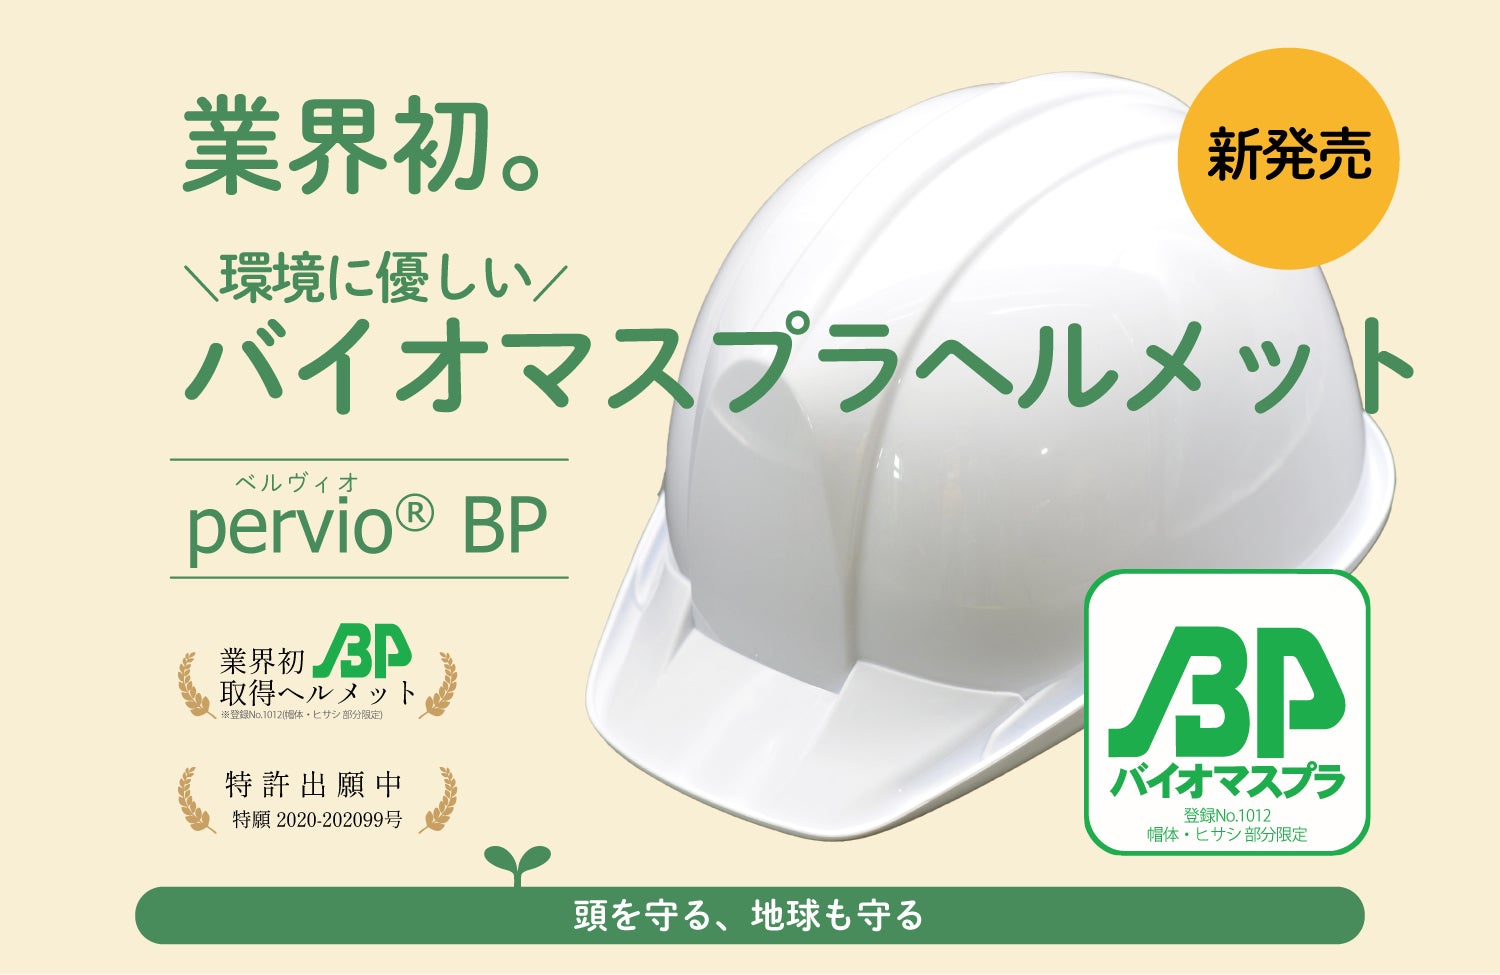 頭も守る、地球も守る。＜業界初＞バイオマスプラヘルメット「pervio® BP」を新発売のサブ画像1